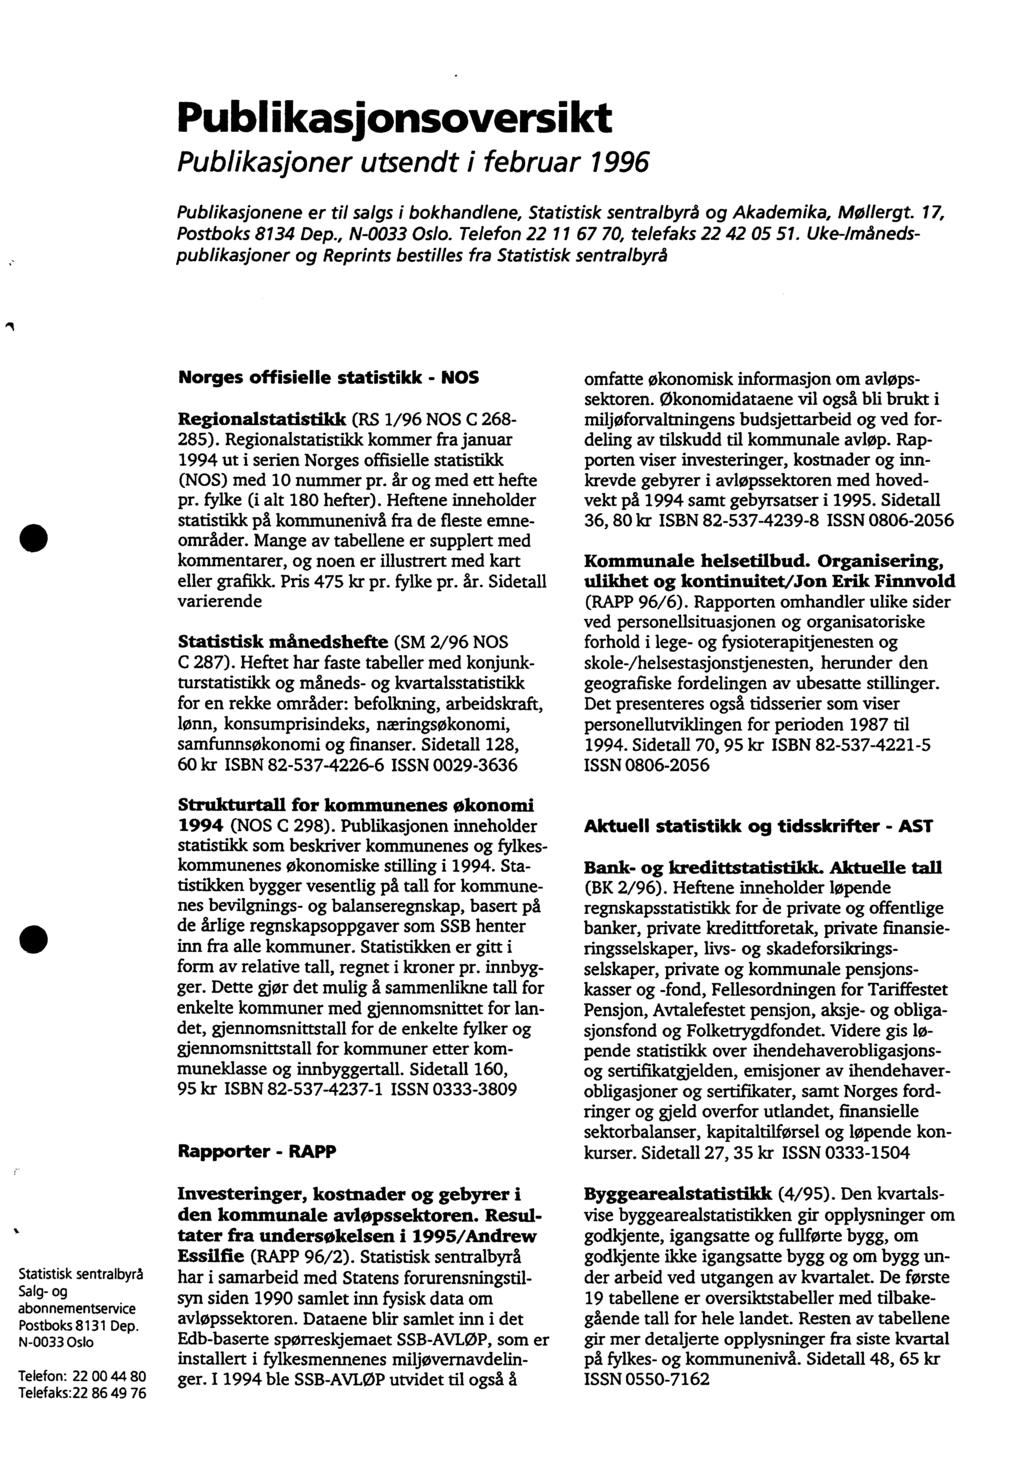 Publikasionsoversikt Publikasjoner utsendt i februar 996 Publikasjonene er til salgs i bokhandlene, Statistisk sentralbyrå og Akademika, Mollergt. 7, Postboks 834 Dep., N-0033 Oslo.